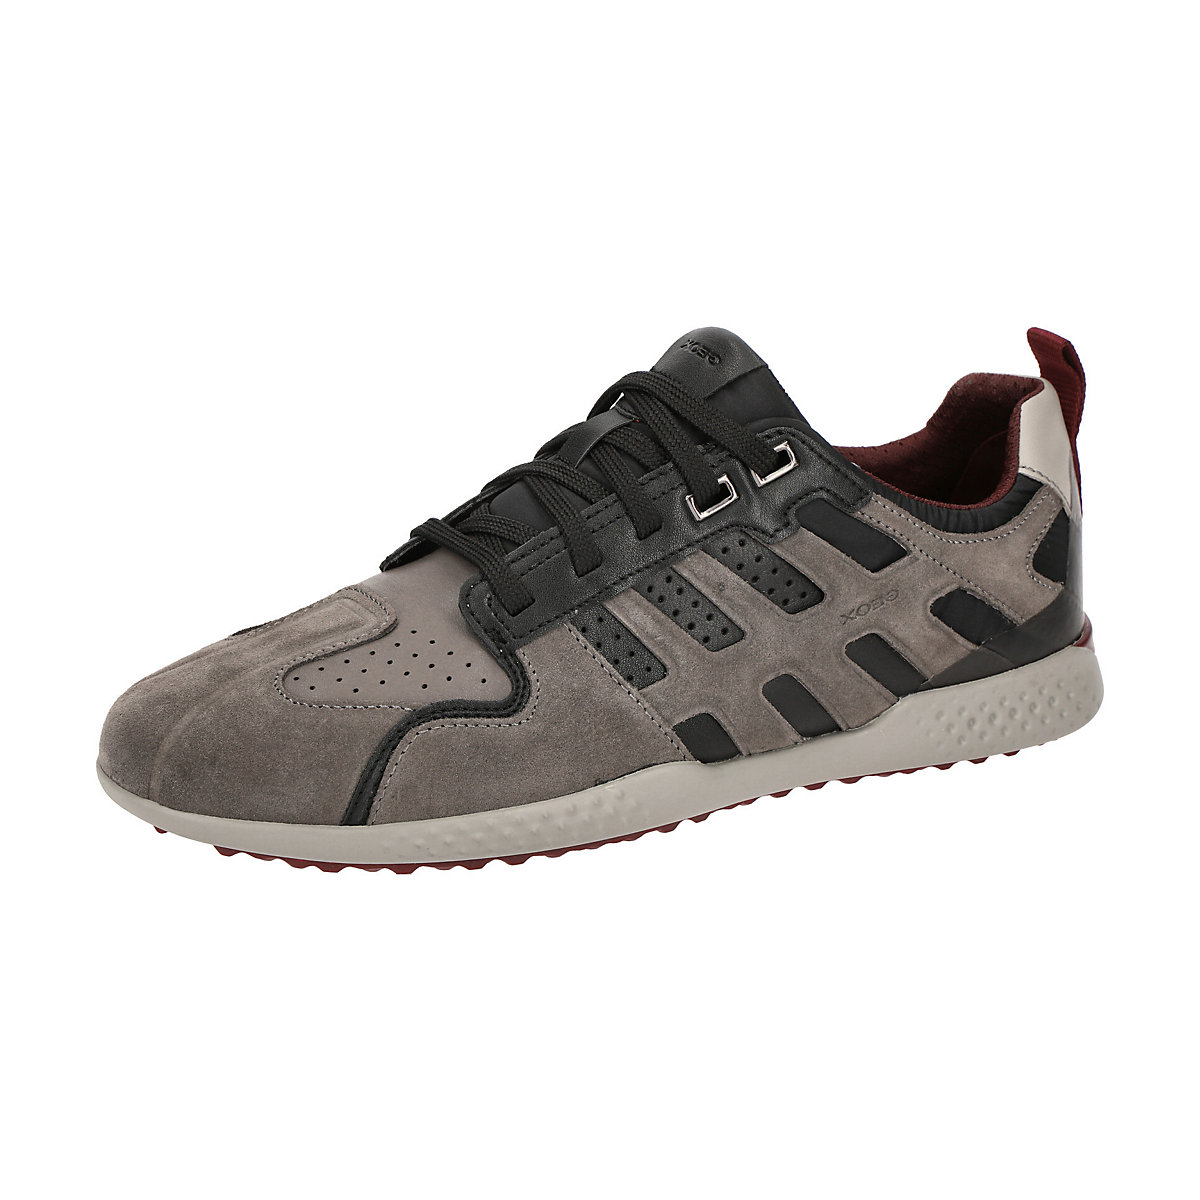 GEOX Herrenschuhe SNAKE 2 Sneakers Low grau